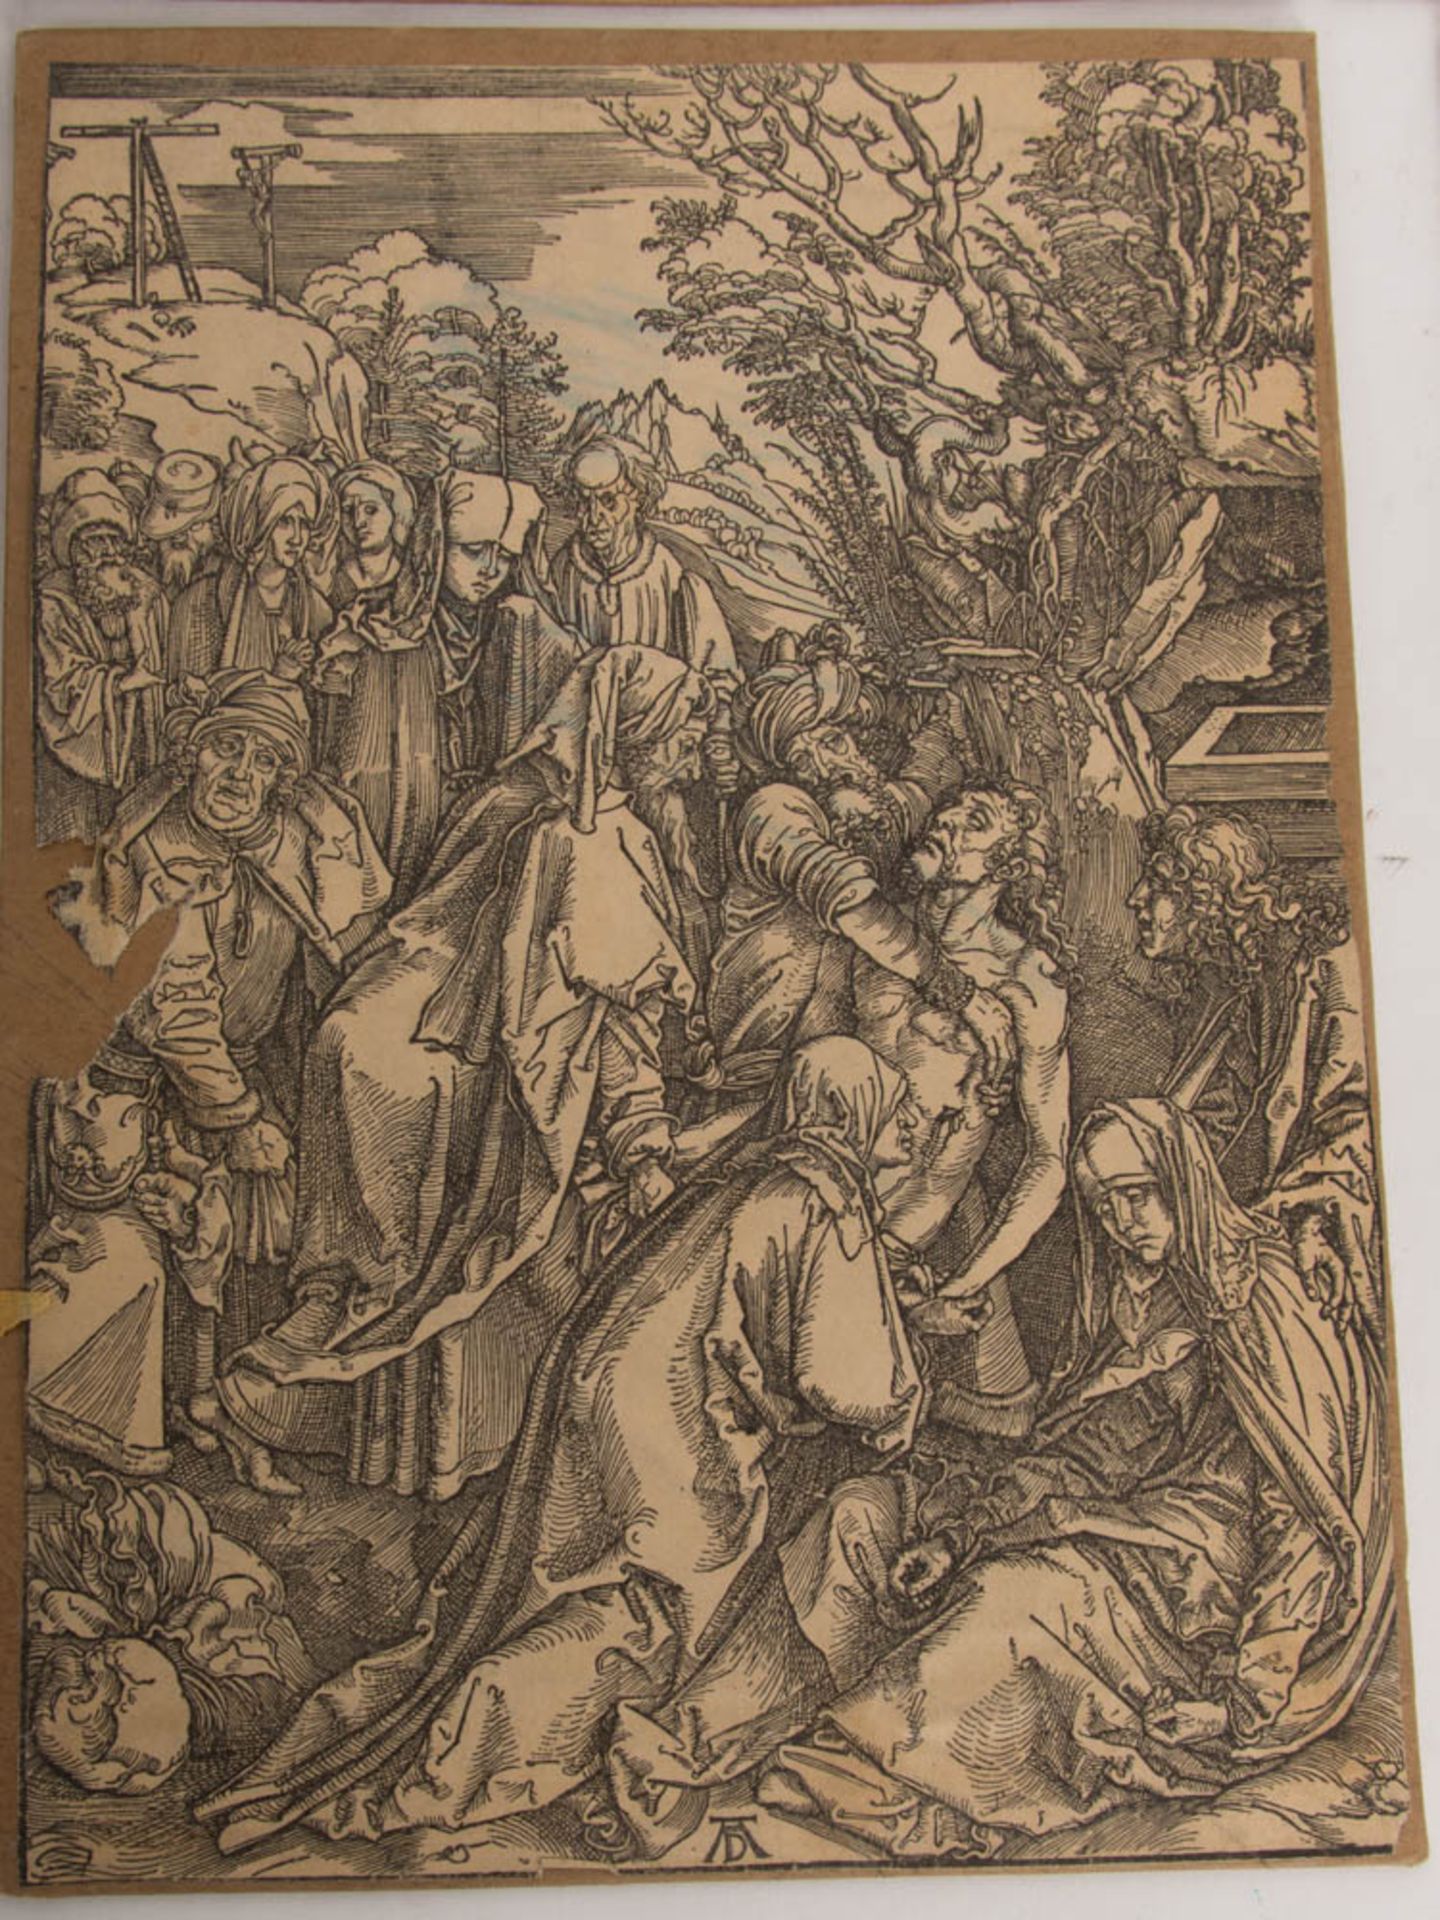 Konvolut von dreizehn Faksimile-Druckplatten zu "Die große Passion" von Albrecht Dürer, wohl Zinkätz - Image 15 of 33